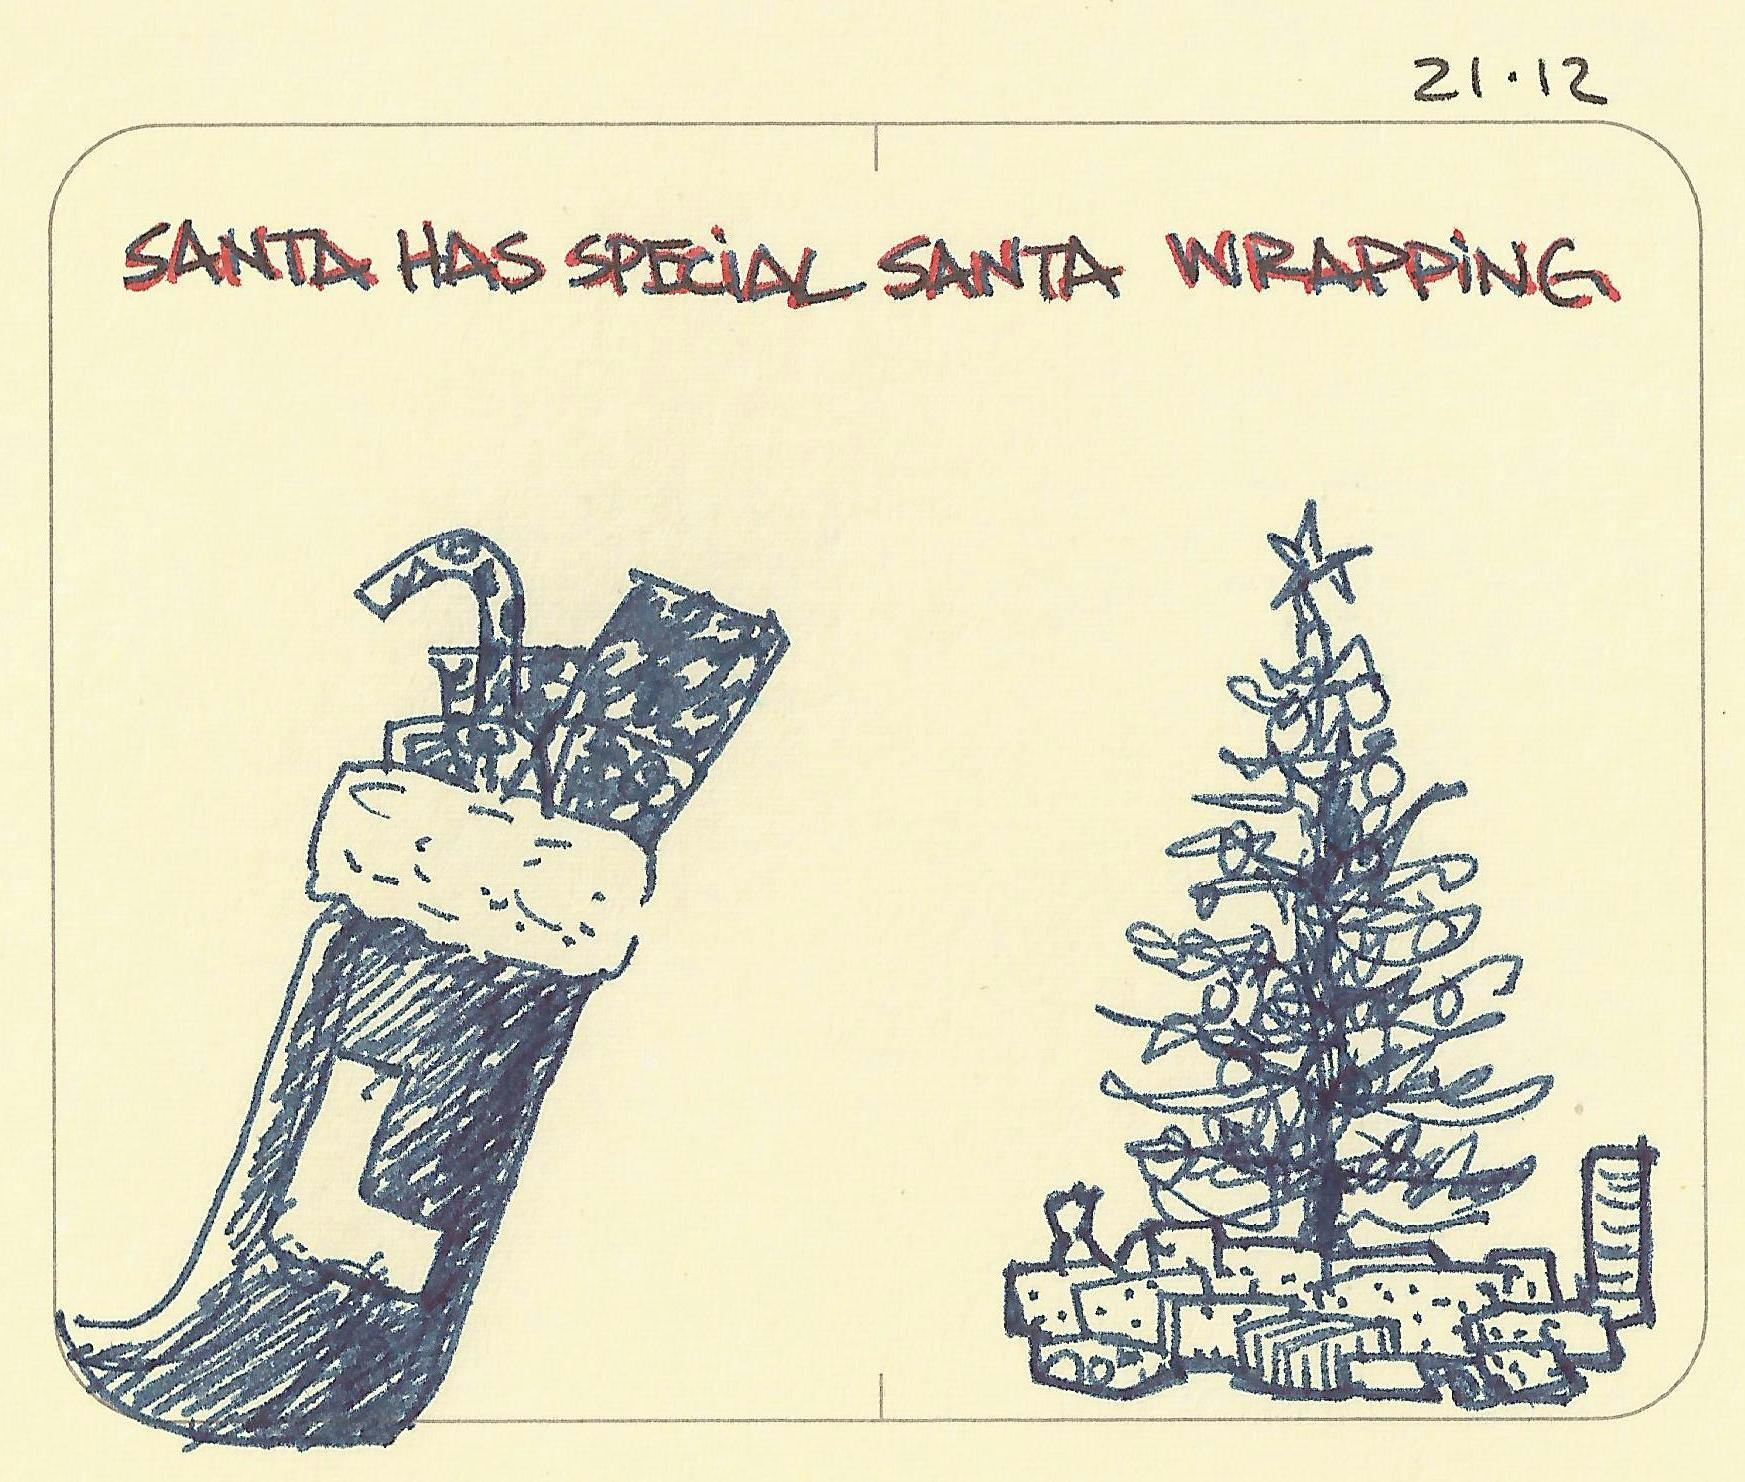 Santa has special wrapping - Sketchplanations